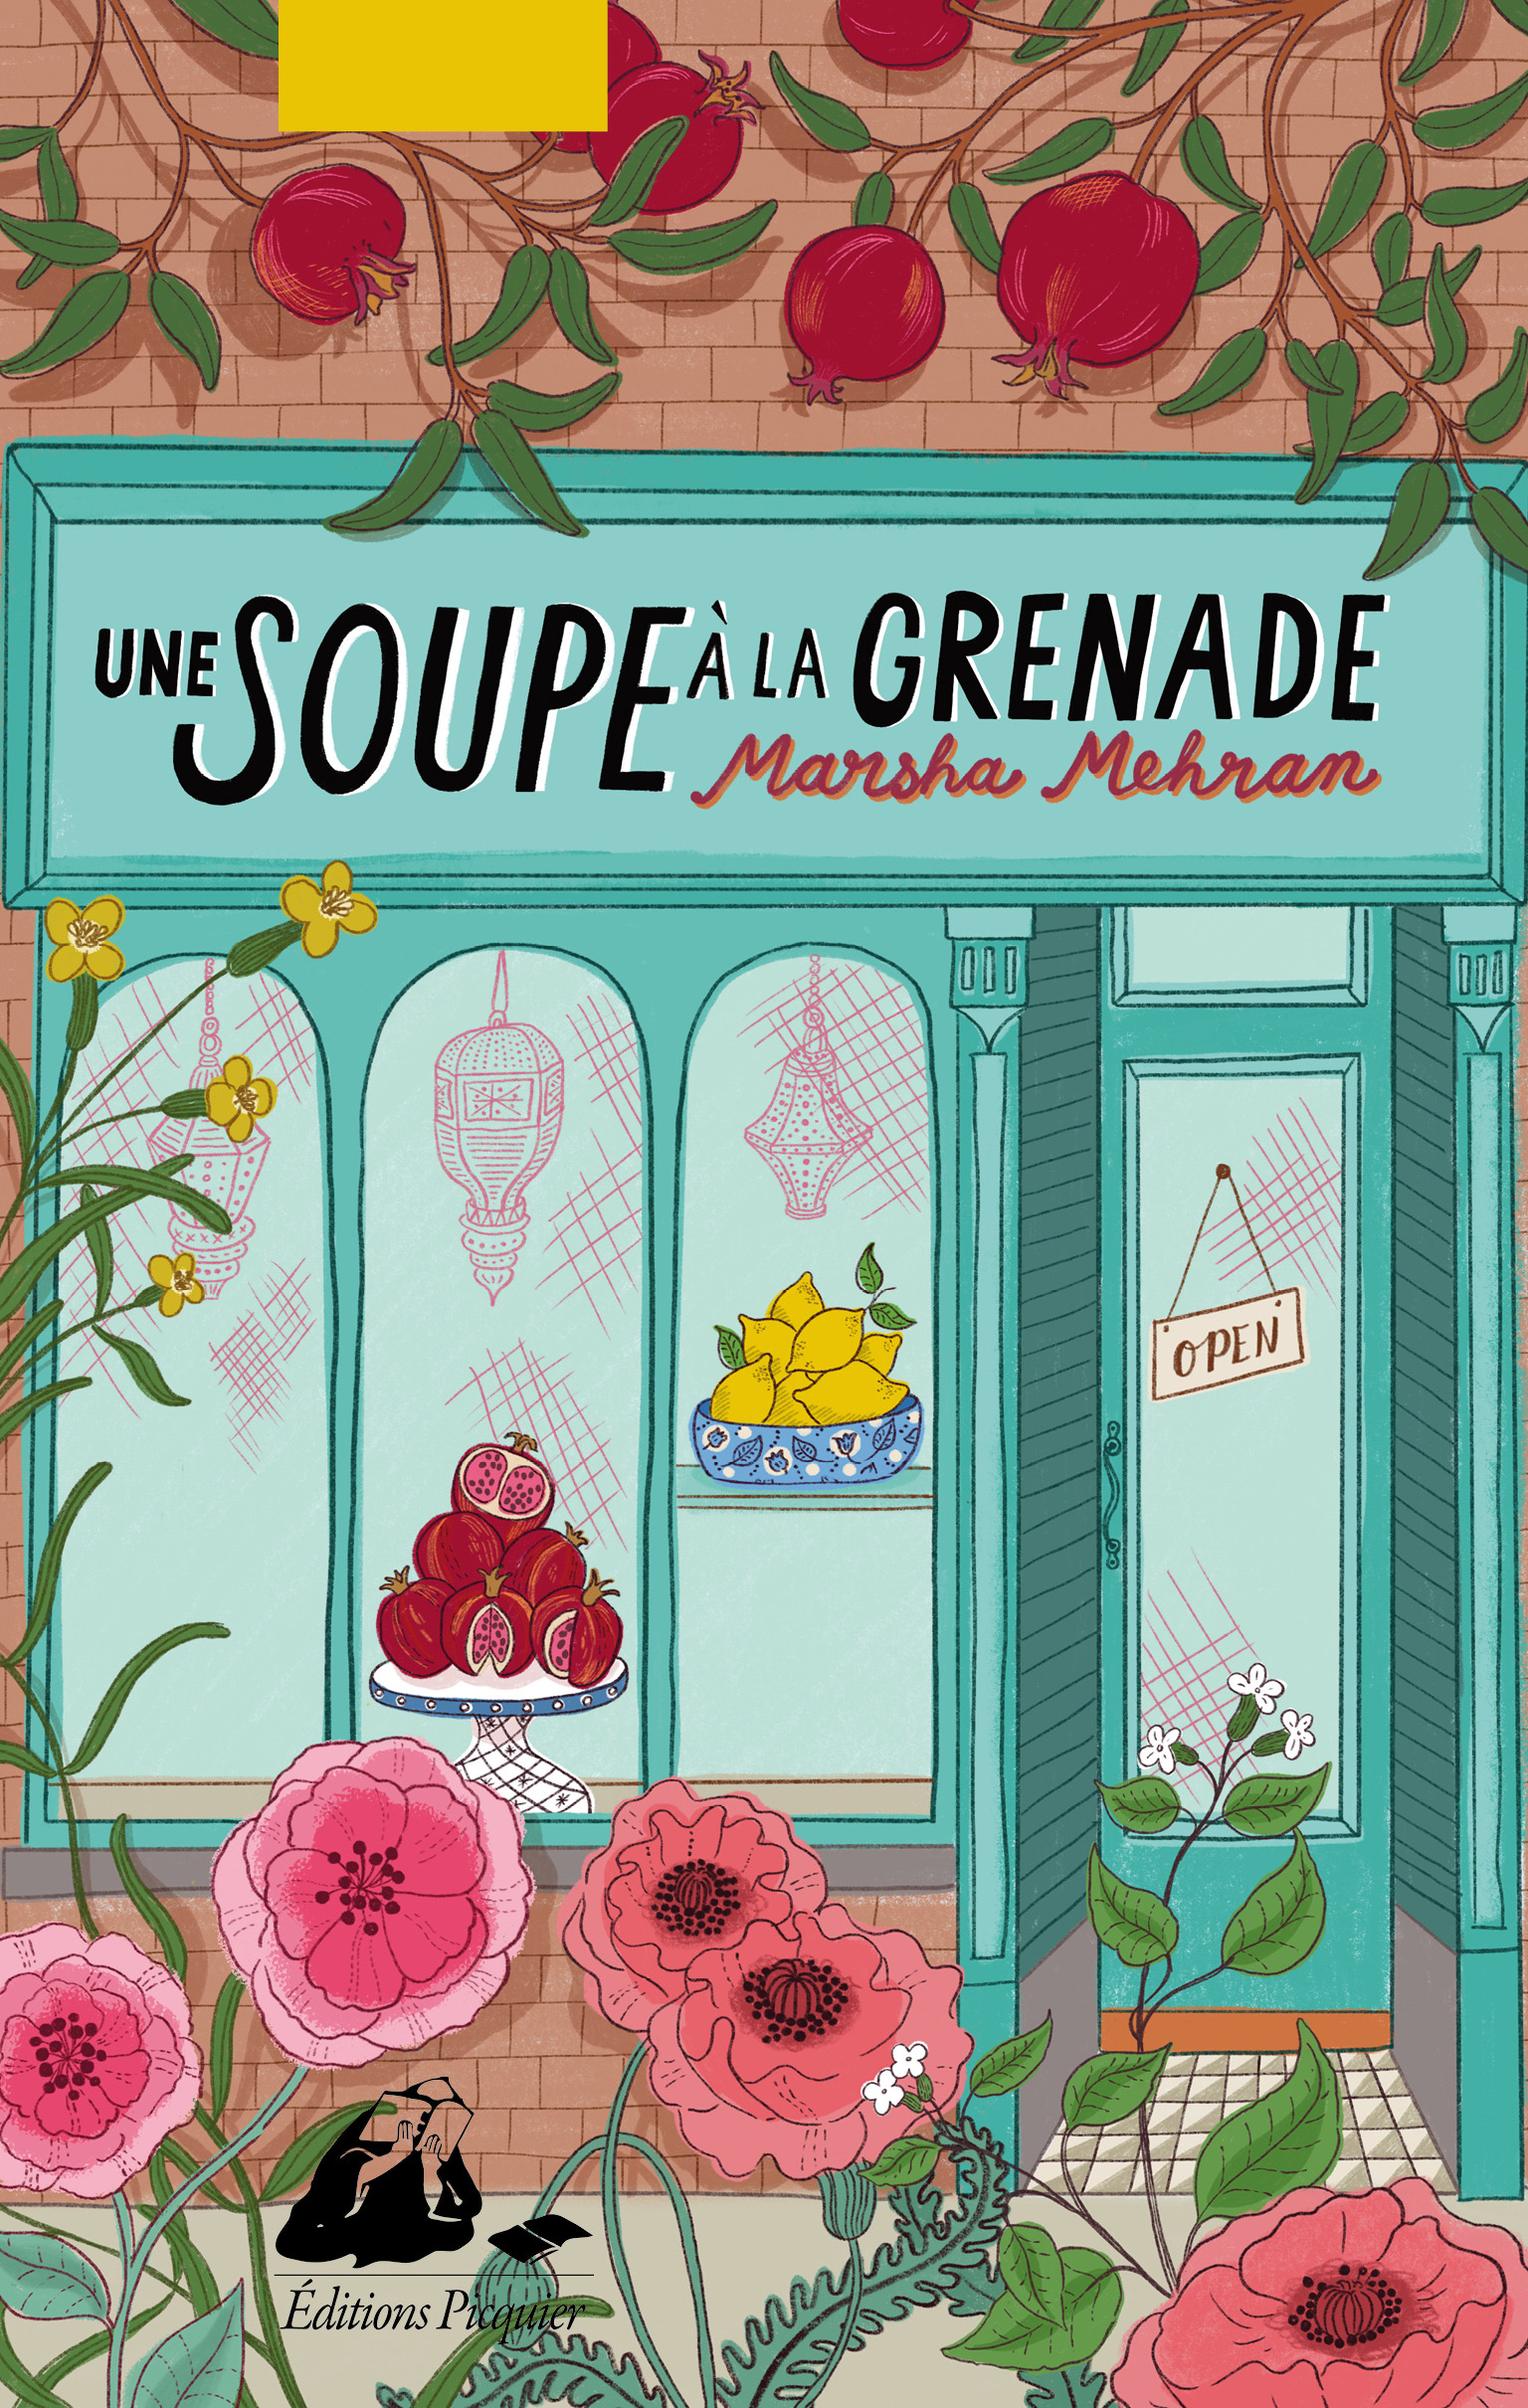 Une soupe à la grenade de Marsha Mehran paraît aux éditions Picquier.